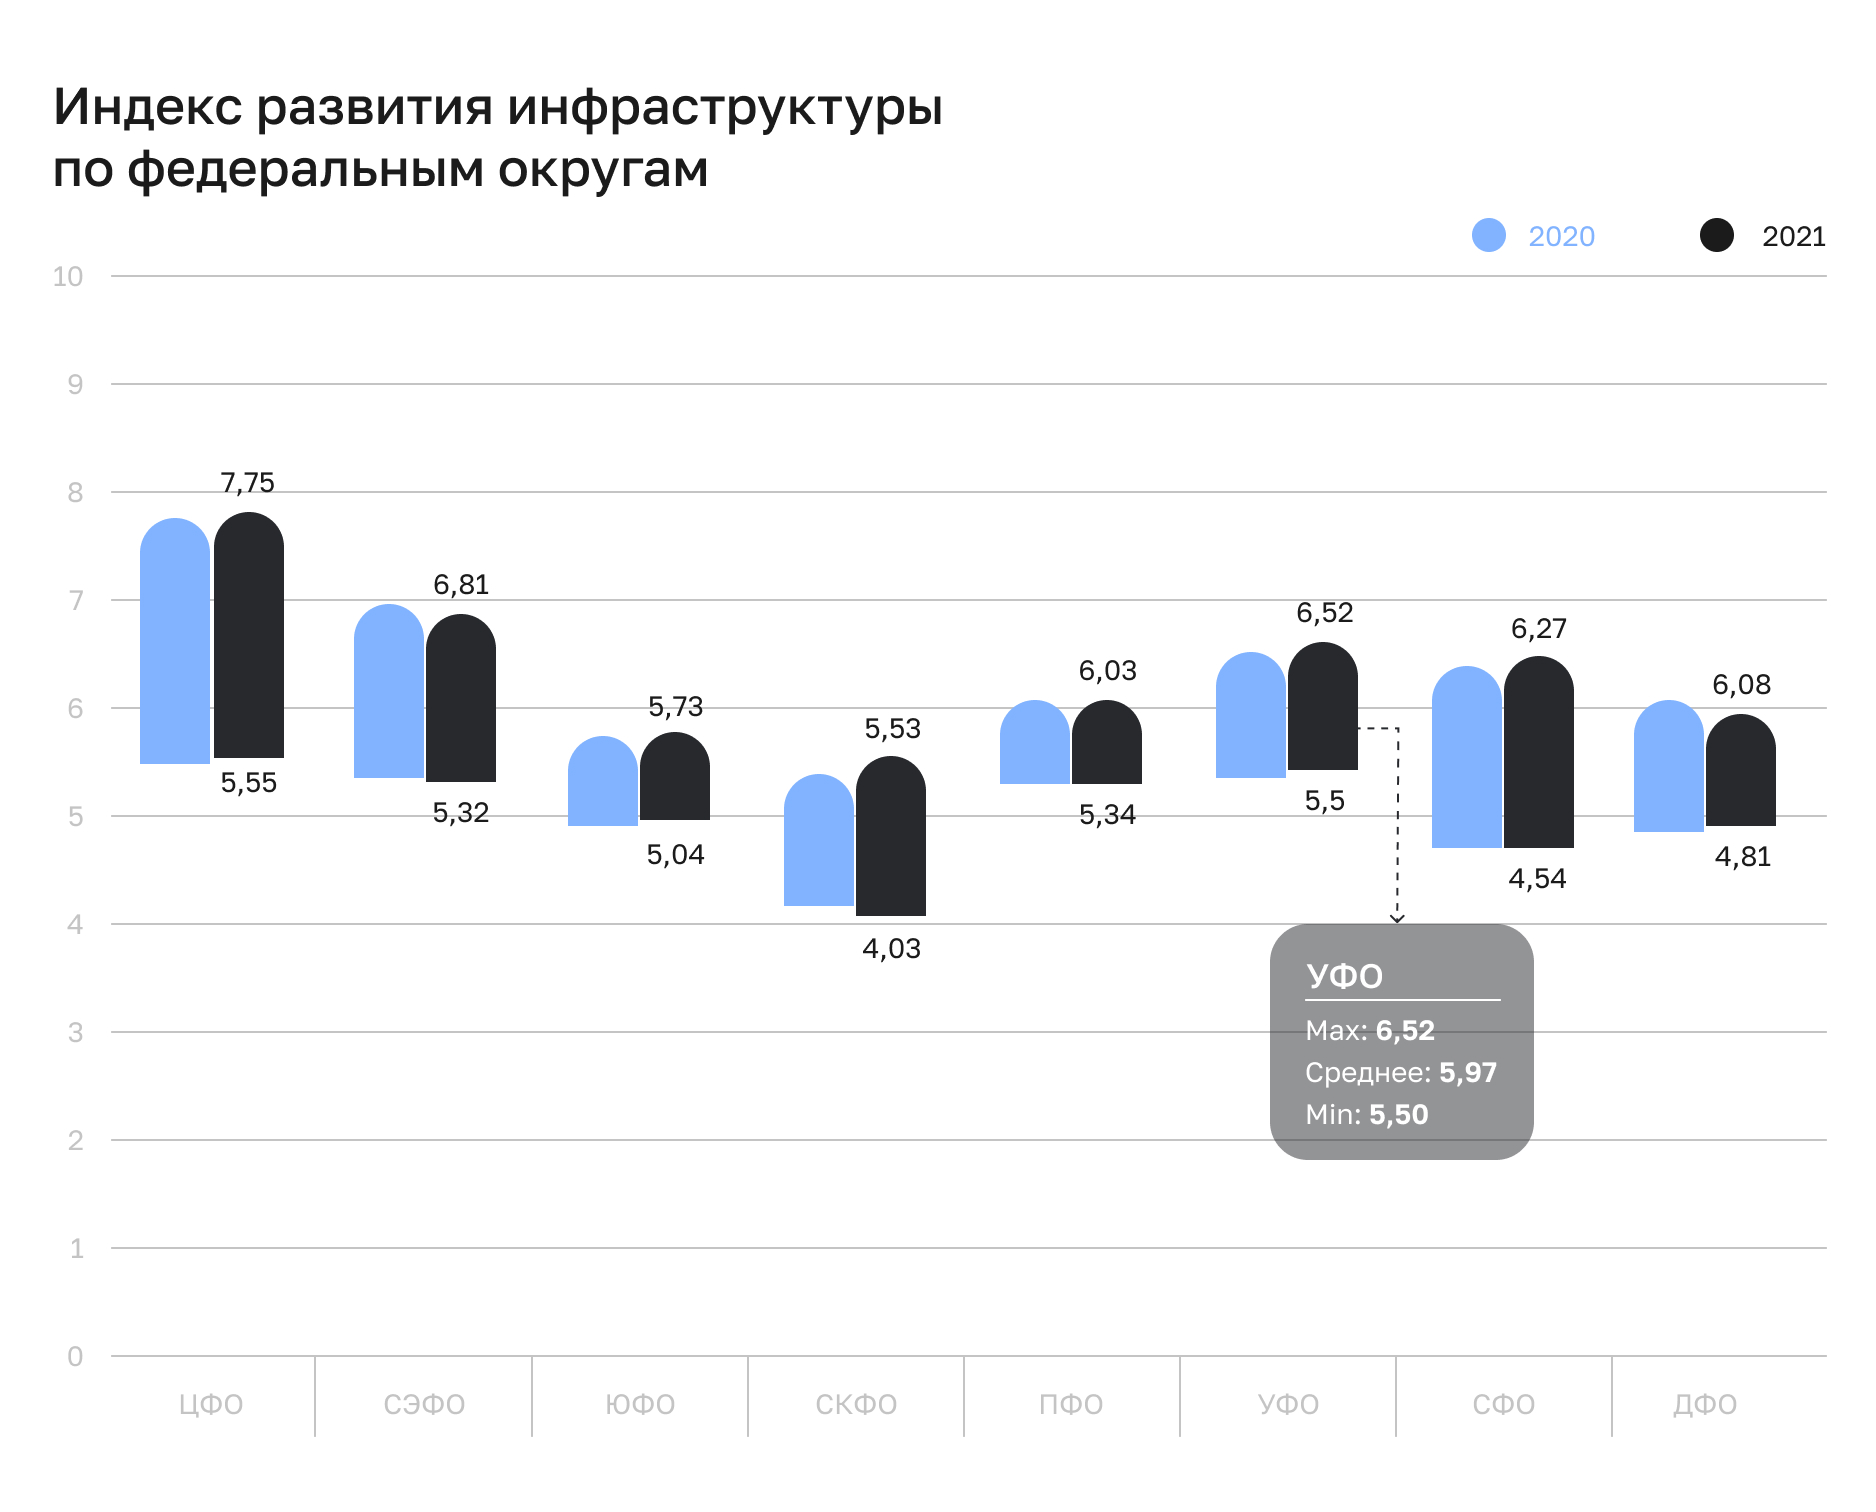 В УФО индекс развития инфраструктуры выше среднероссийского уровня (5,62)